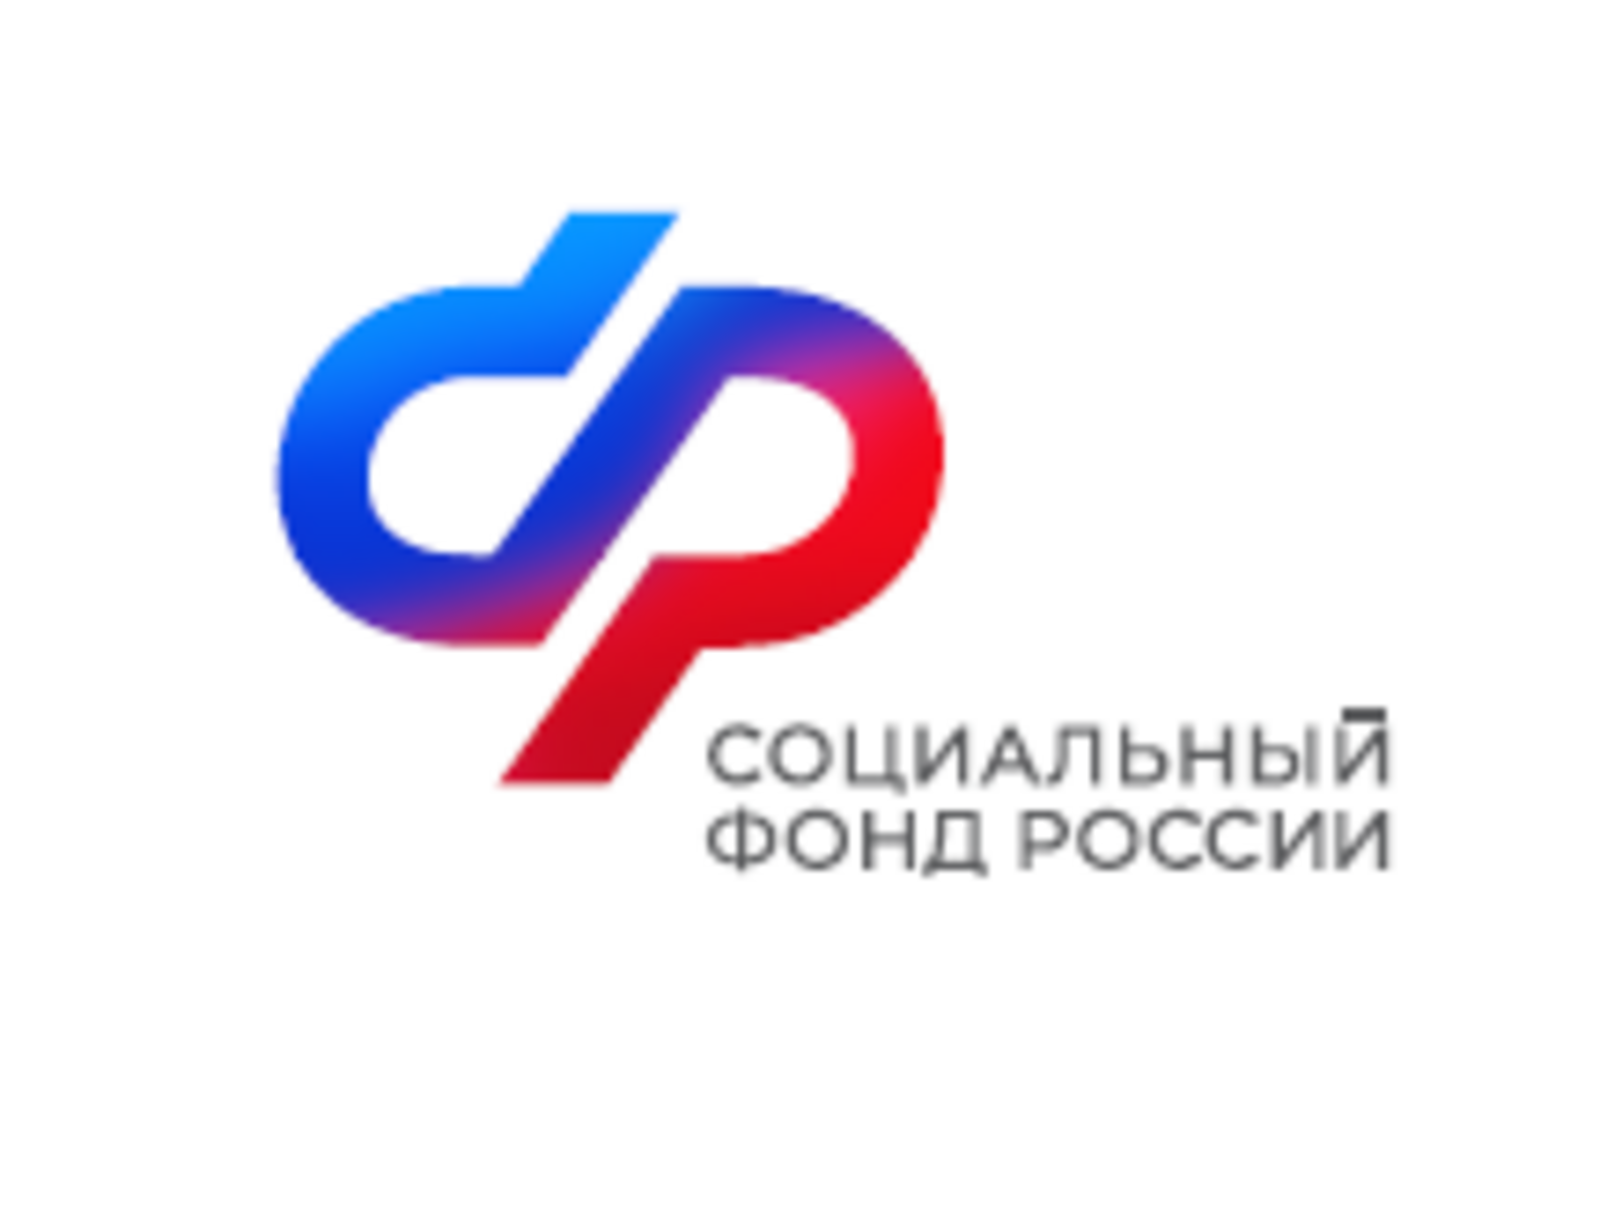 Отделение Социального фонда России по Республике Башкортостан получает данные по распоряжению материнским капиталом  от 1106  учебных учреждений